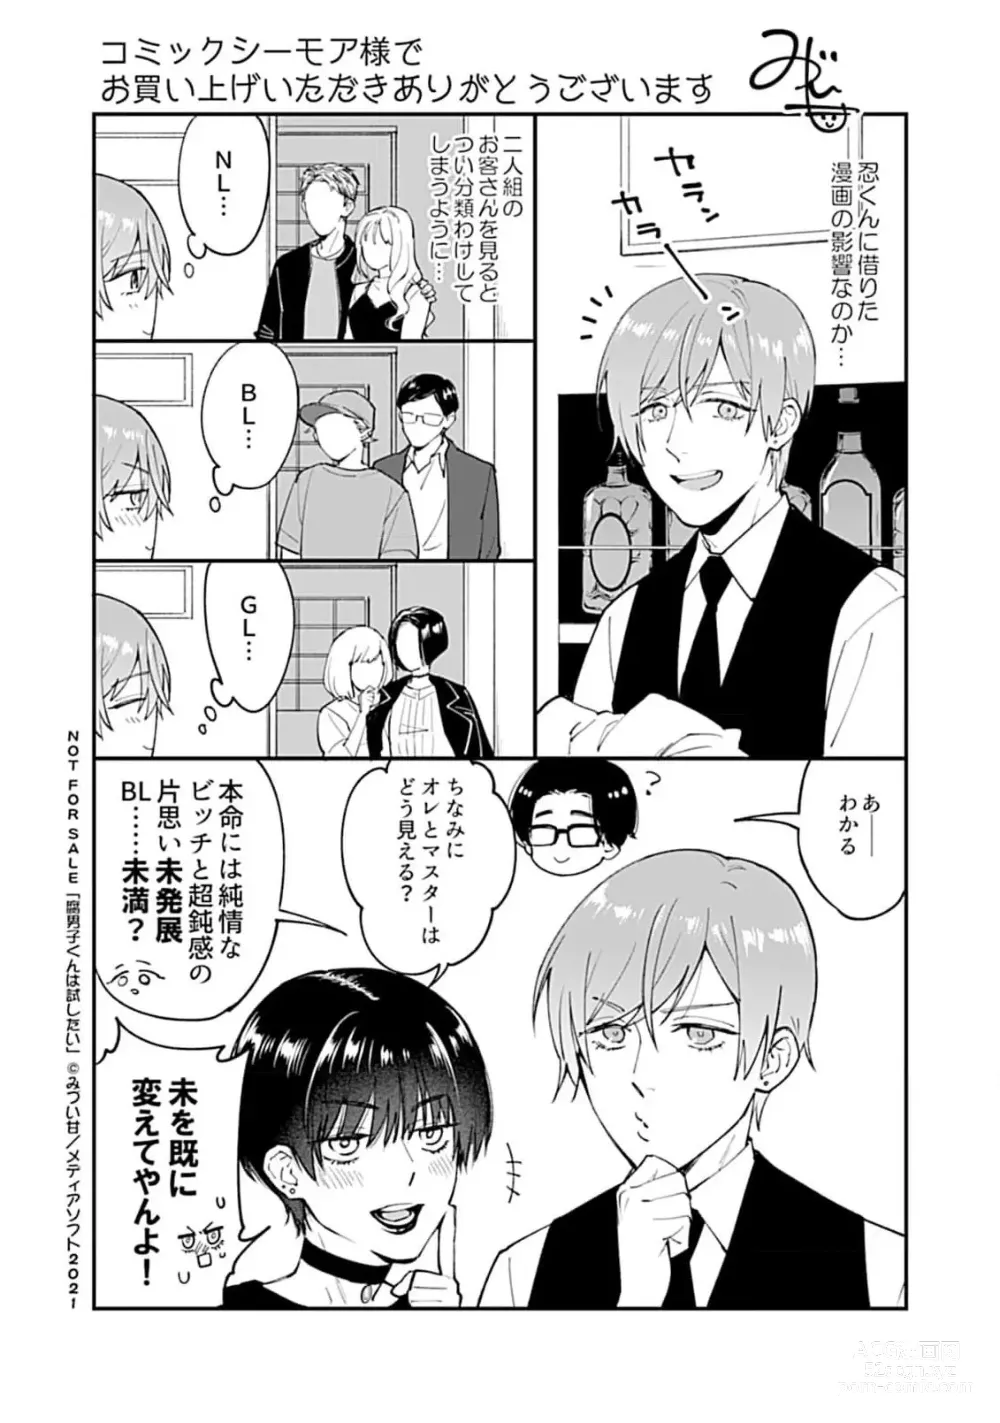 Page 183 of manga Fudanshi-kun wa Tameshitai